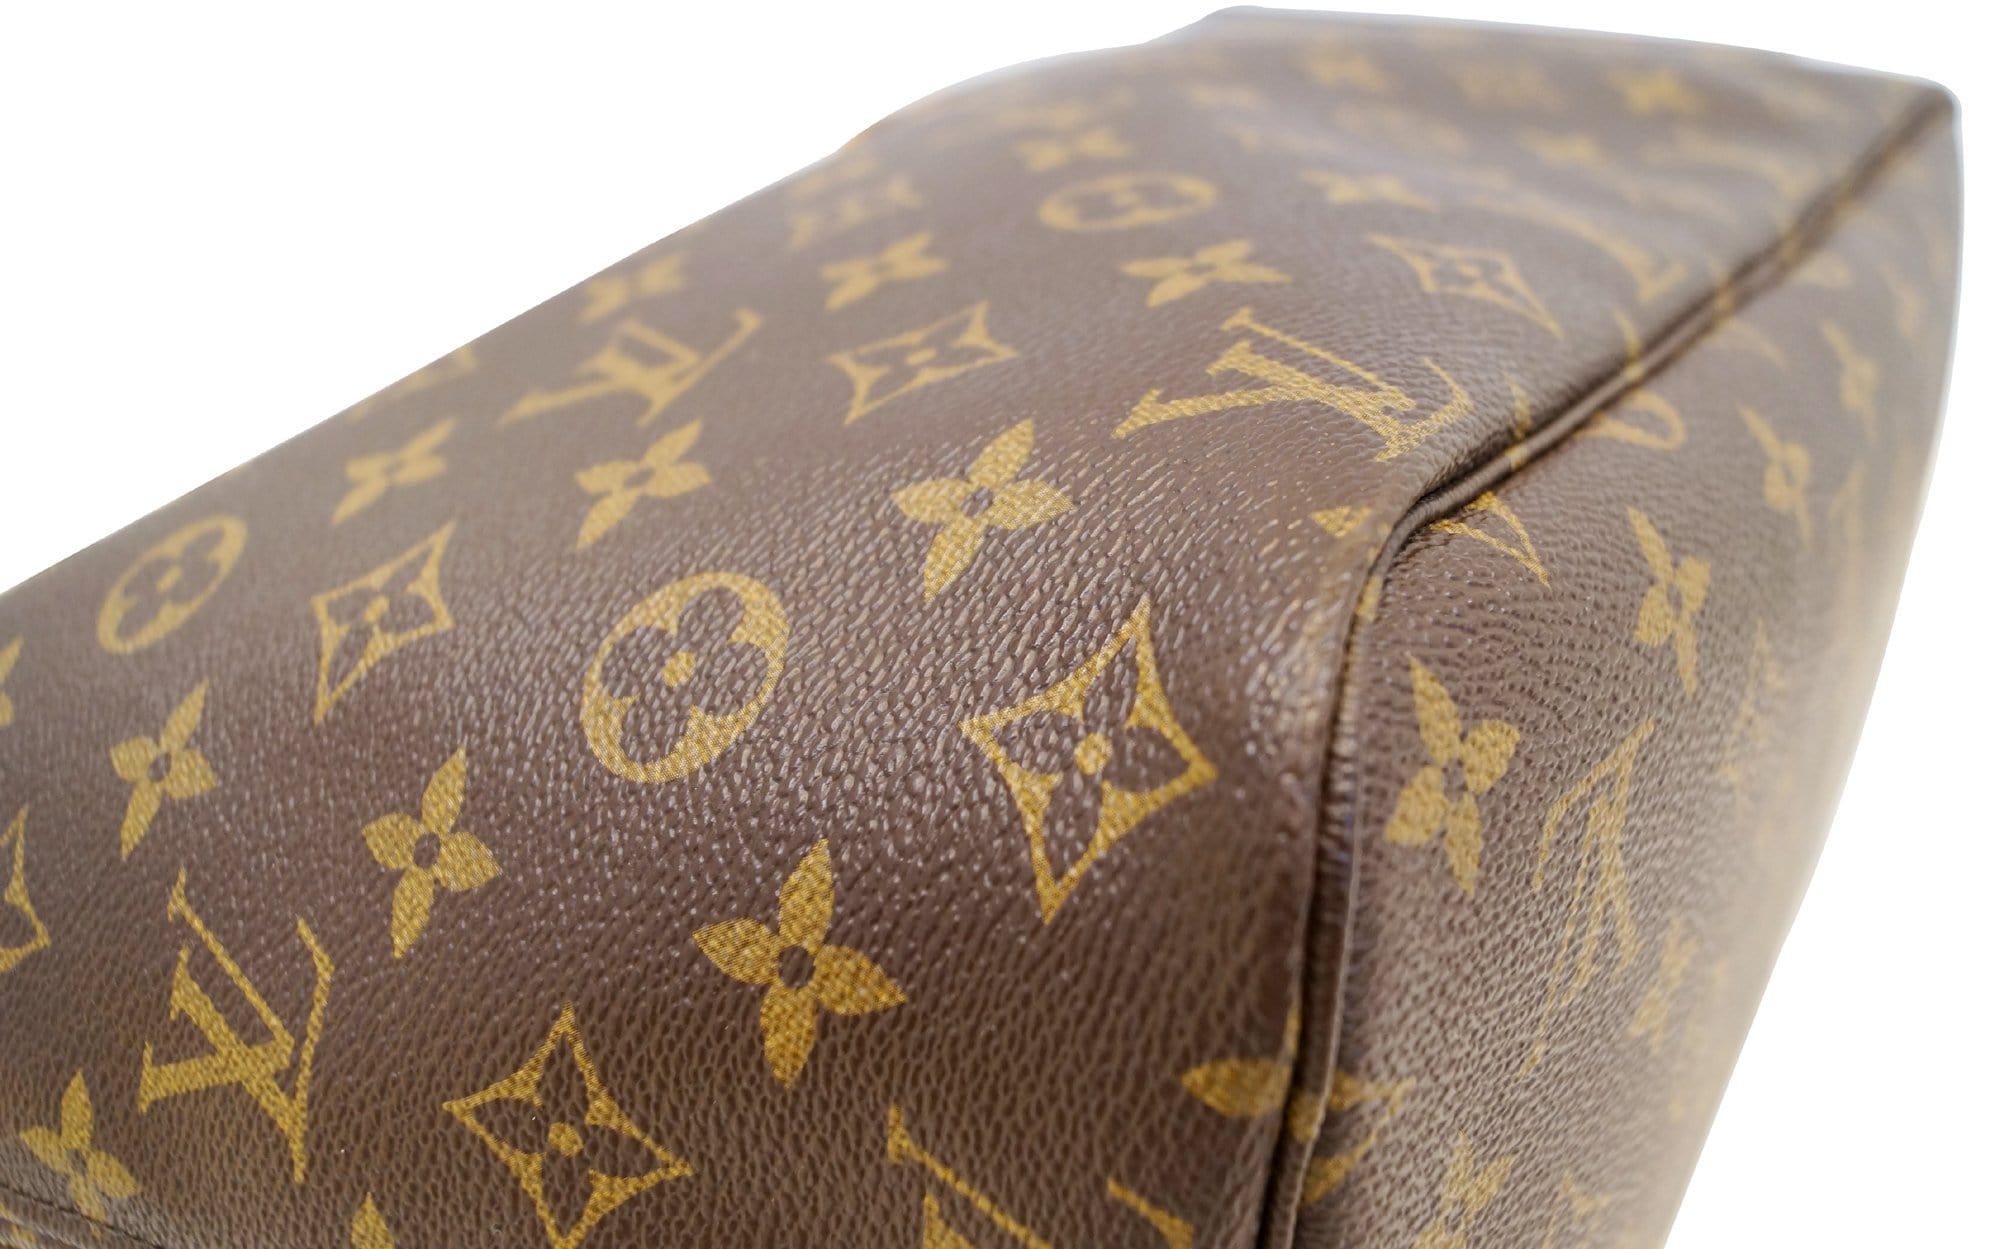 Louis Vuitton Handbag & Pouch Monogram Canvas Carry It Receipt